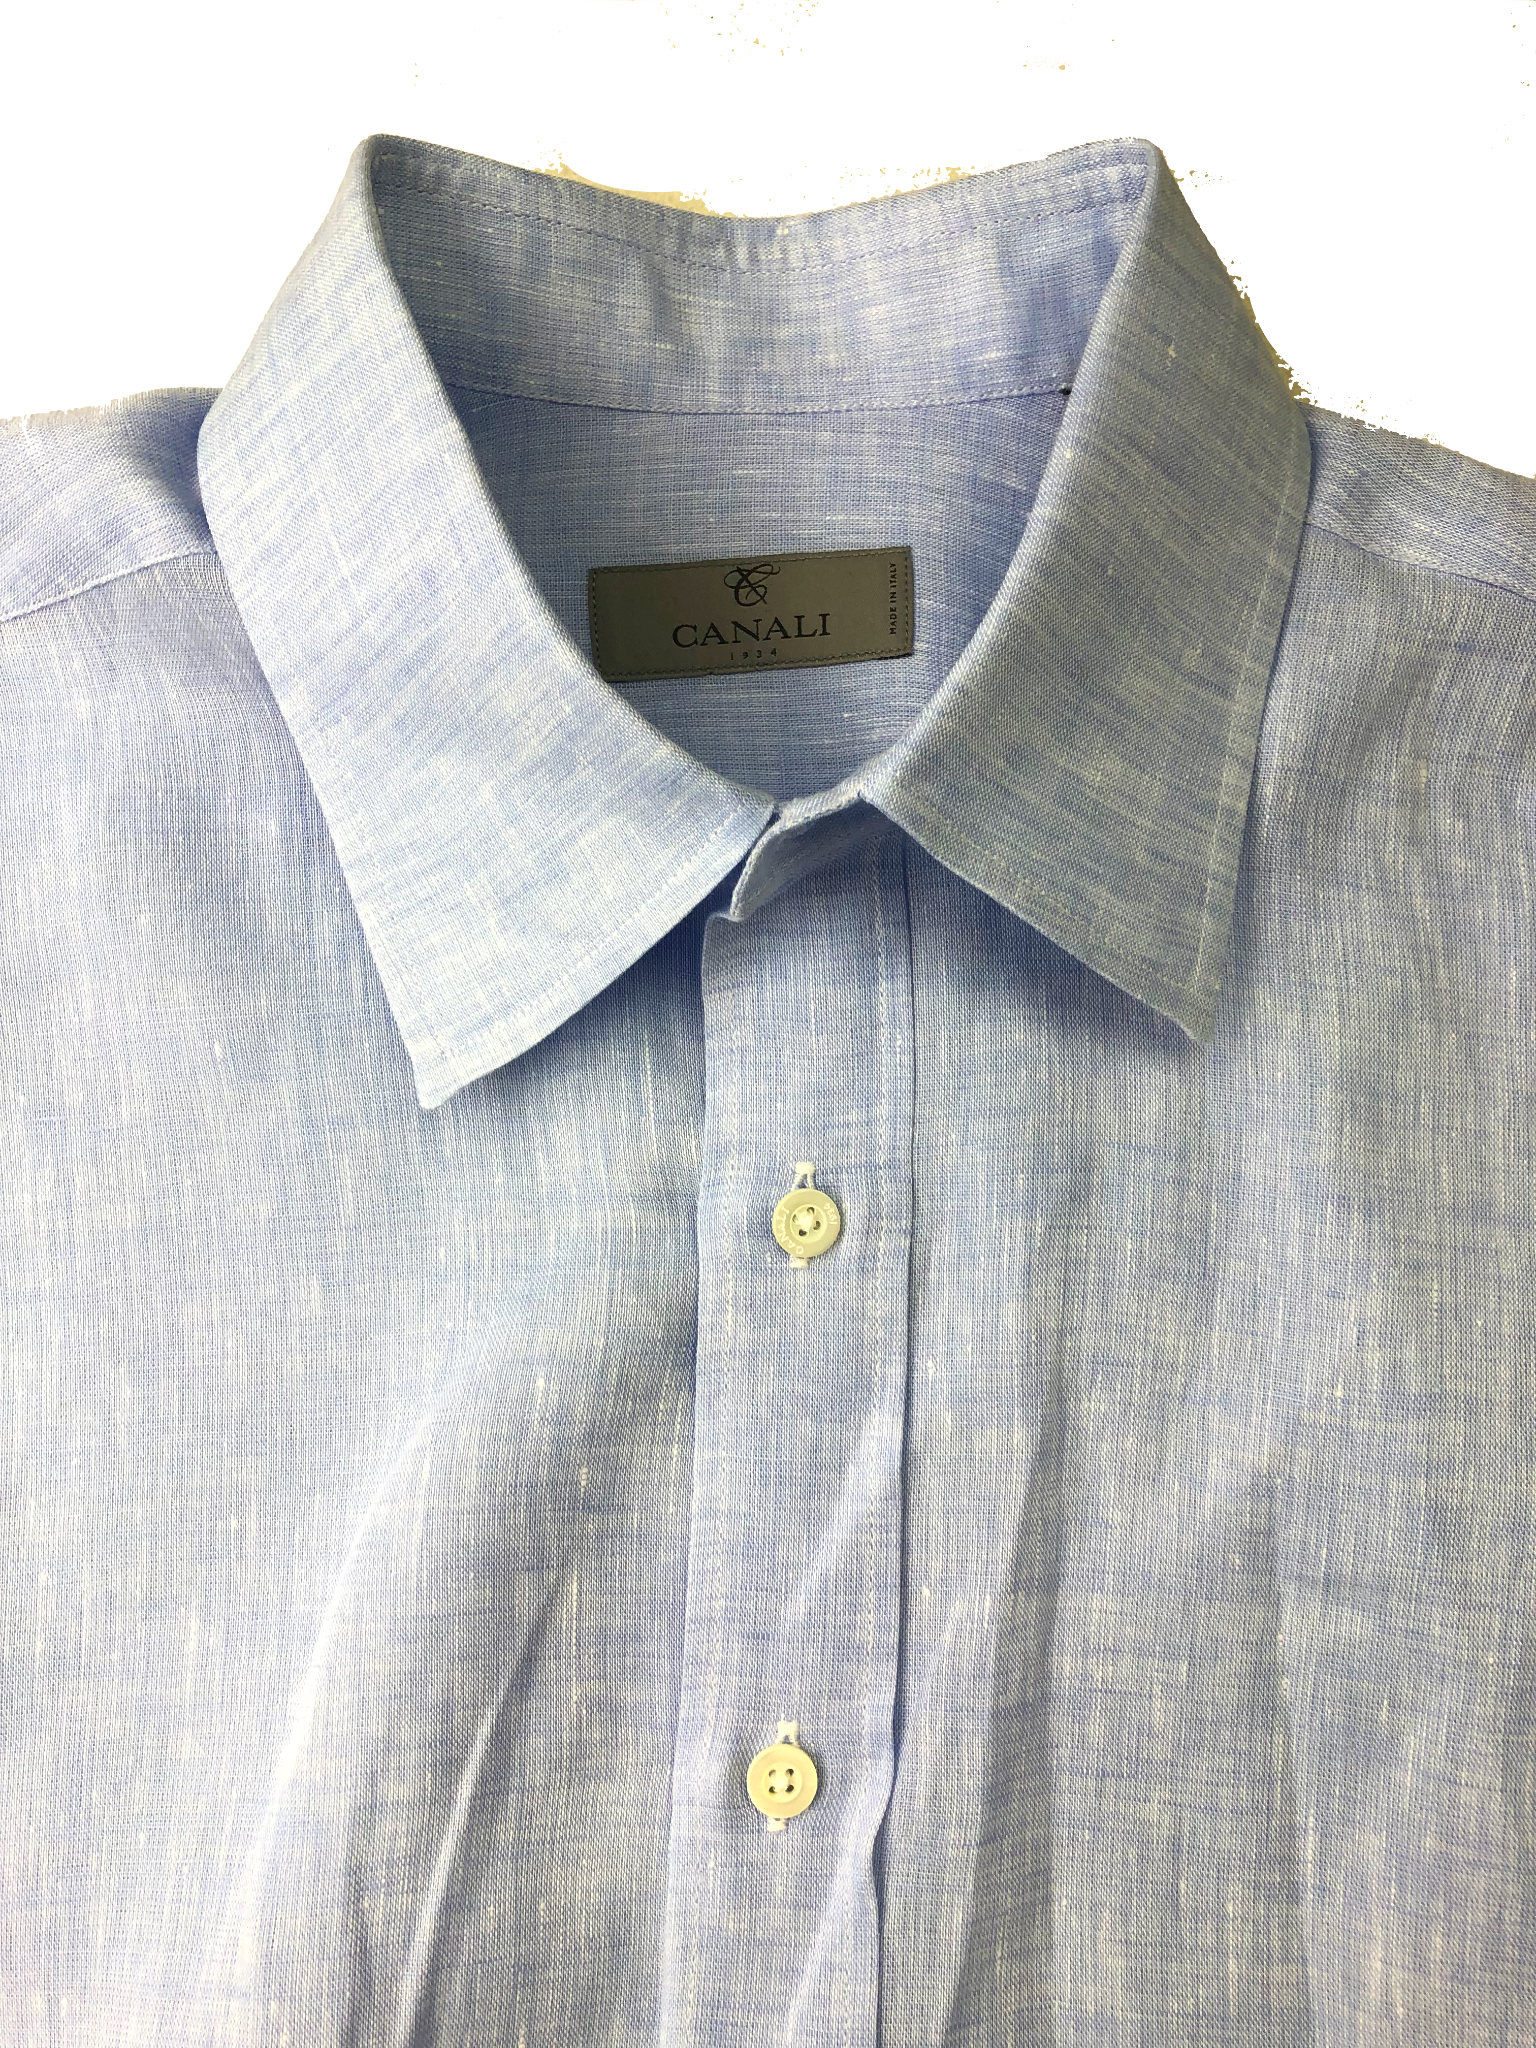 Canali Men's Linen Button Up Shirt Light Blue Large Modern Fit